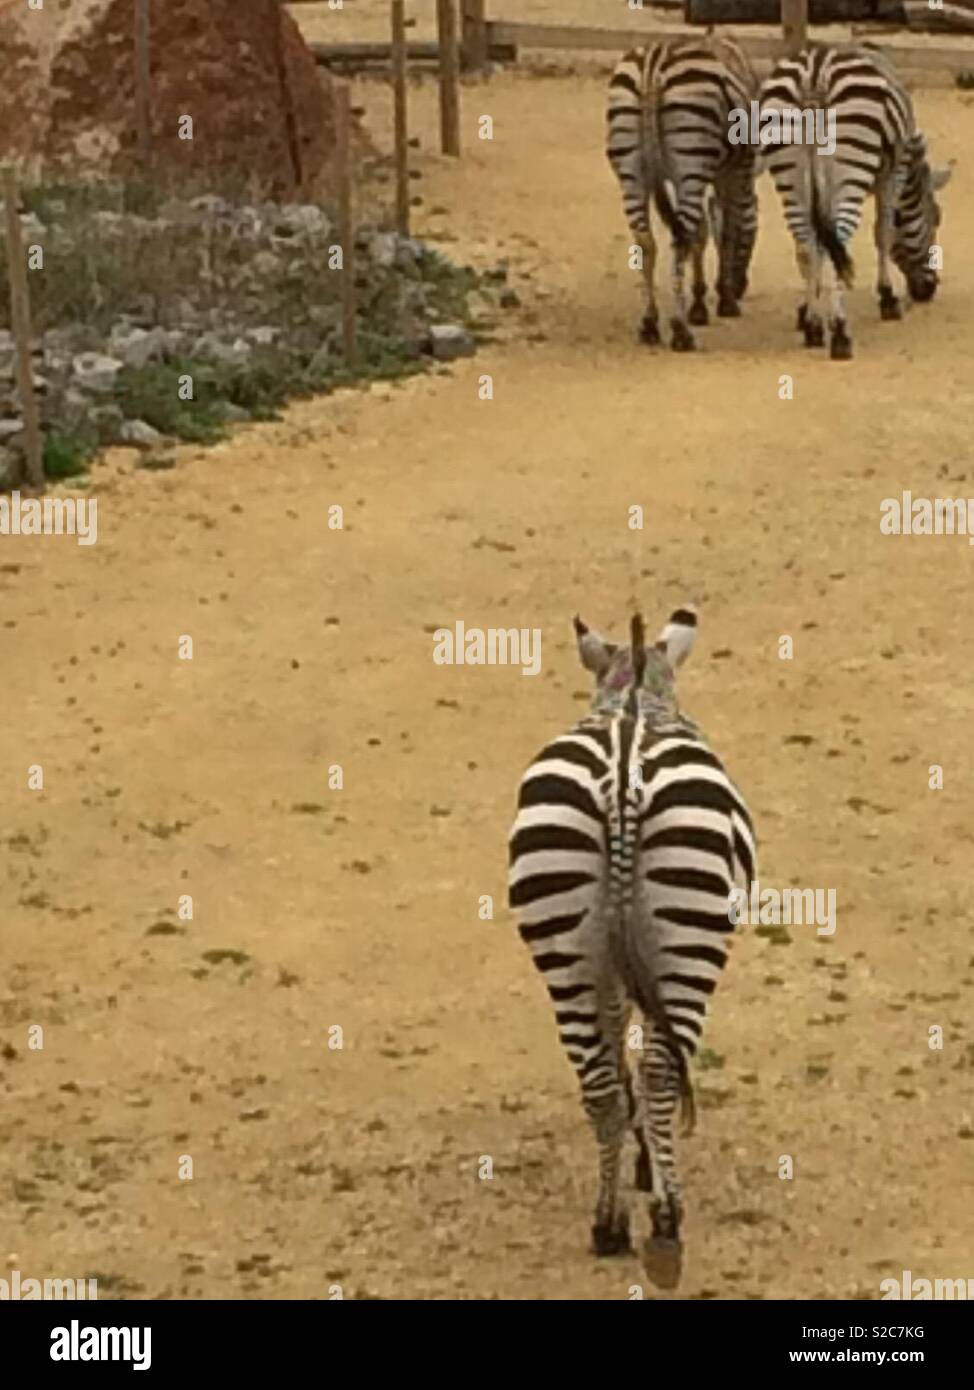 Three zebra walking away Stock Photo